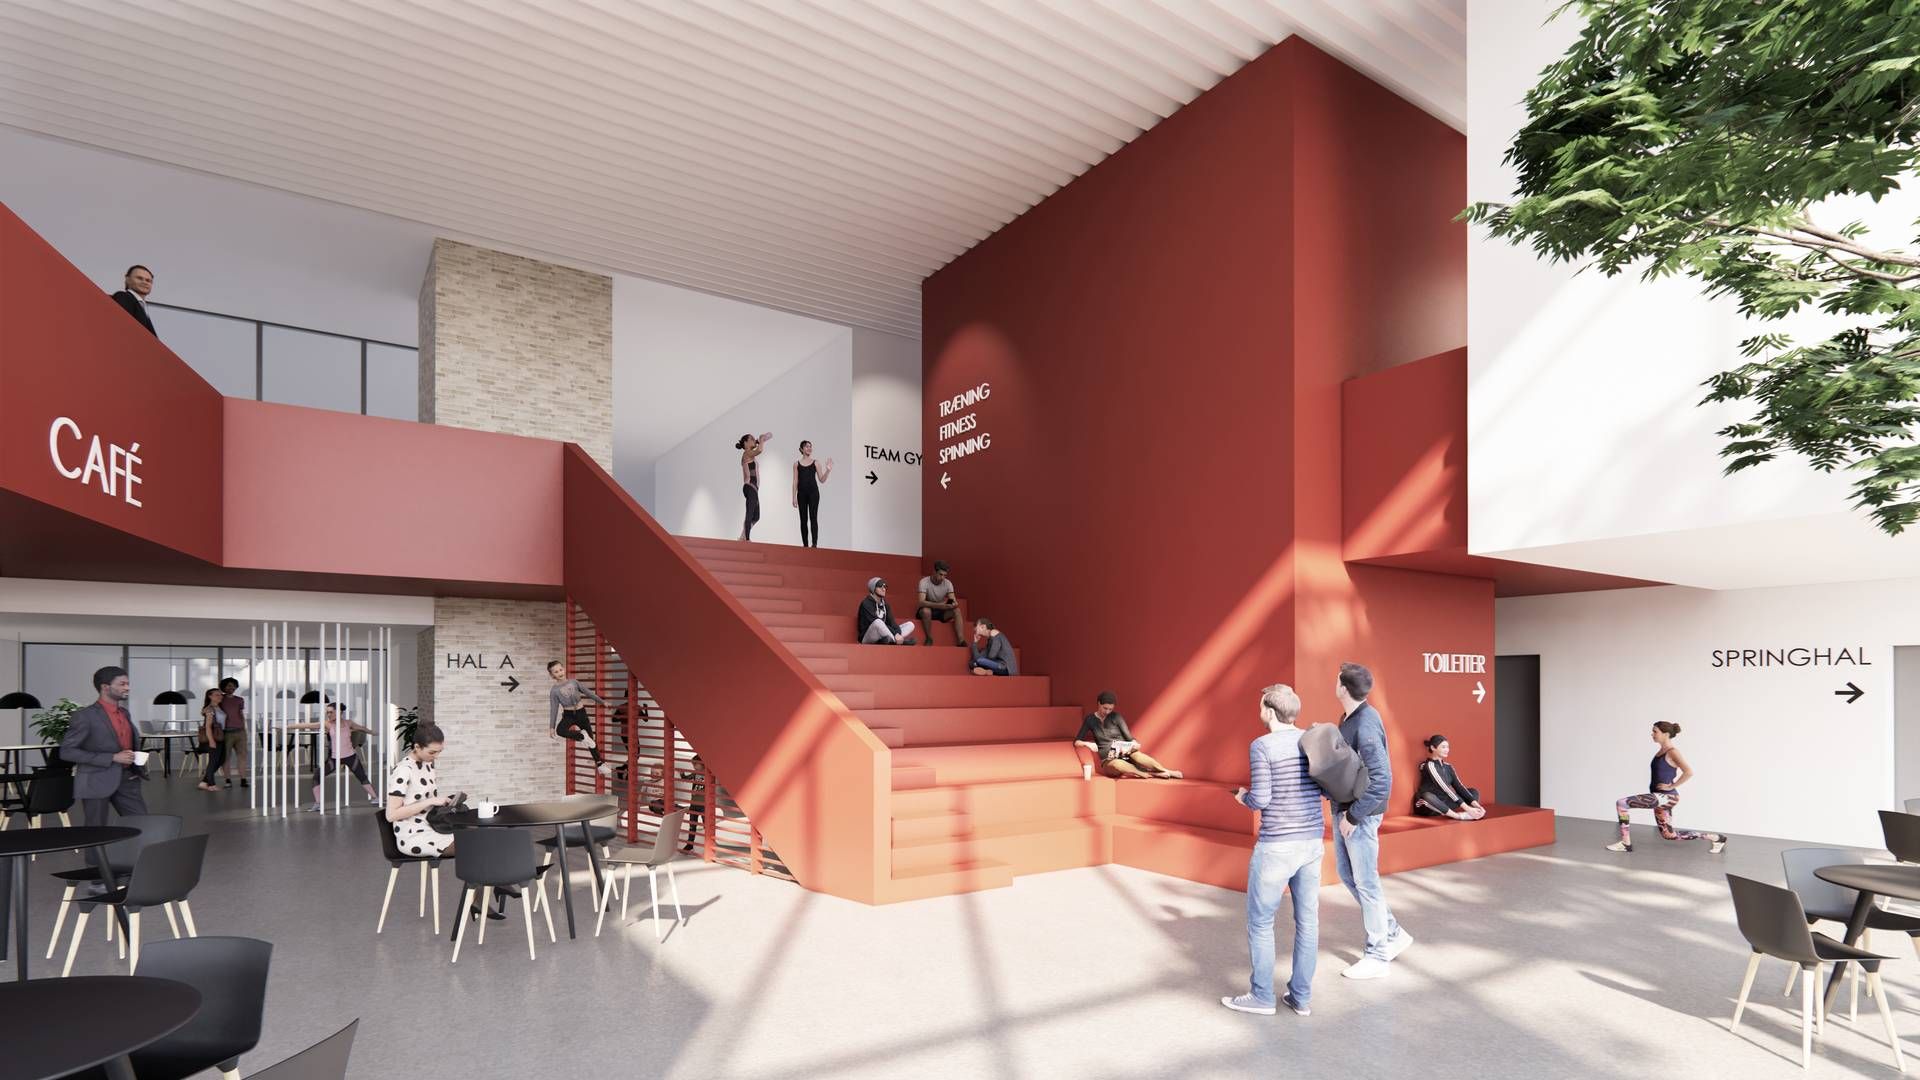 Visualiseringen fra P+P Arkitekter viser foyeren i det nye idrætscenter. | Foto: Visualisering fra P+P Arkitekter